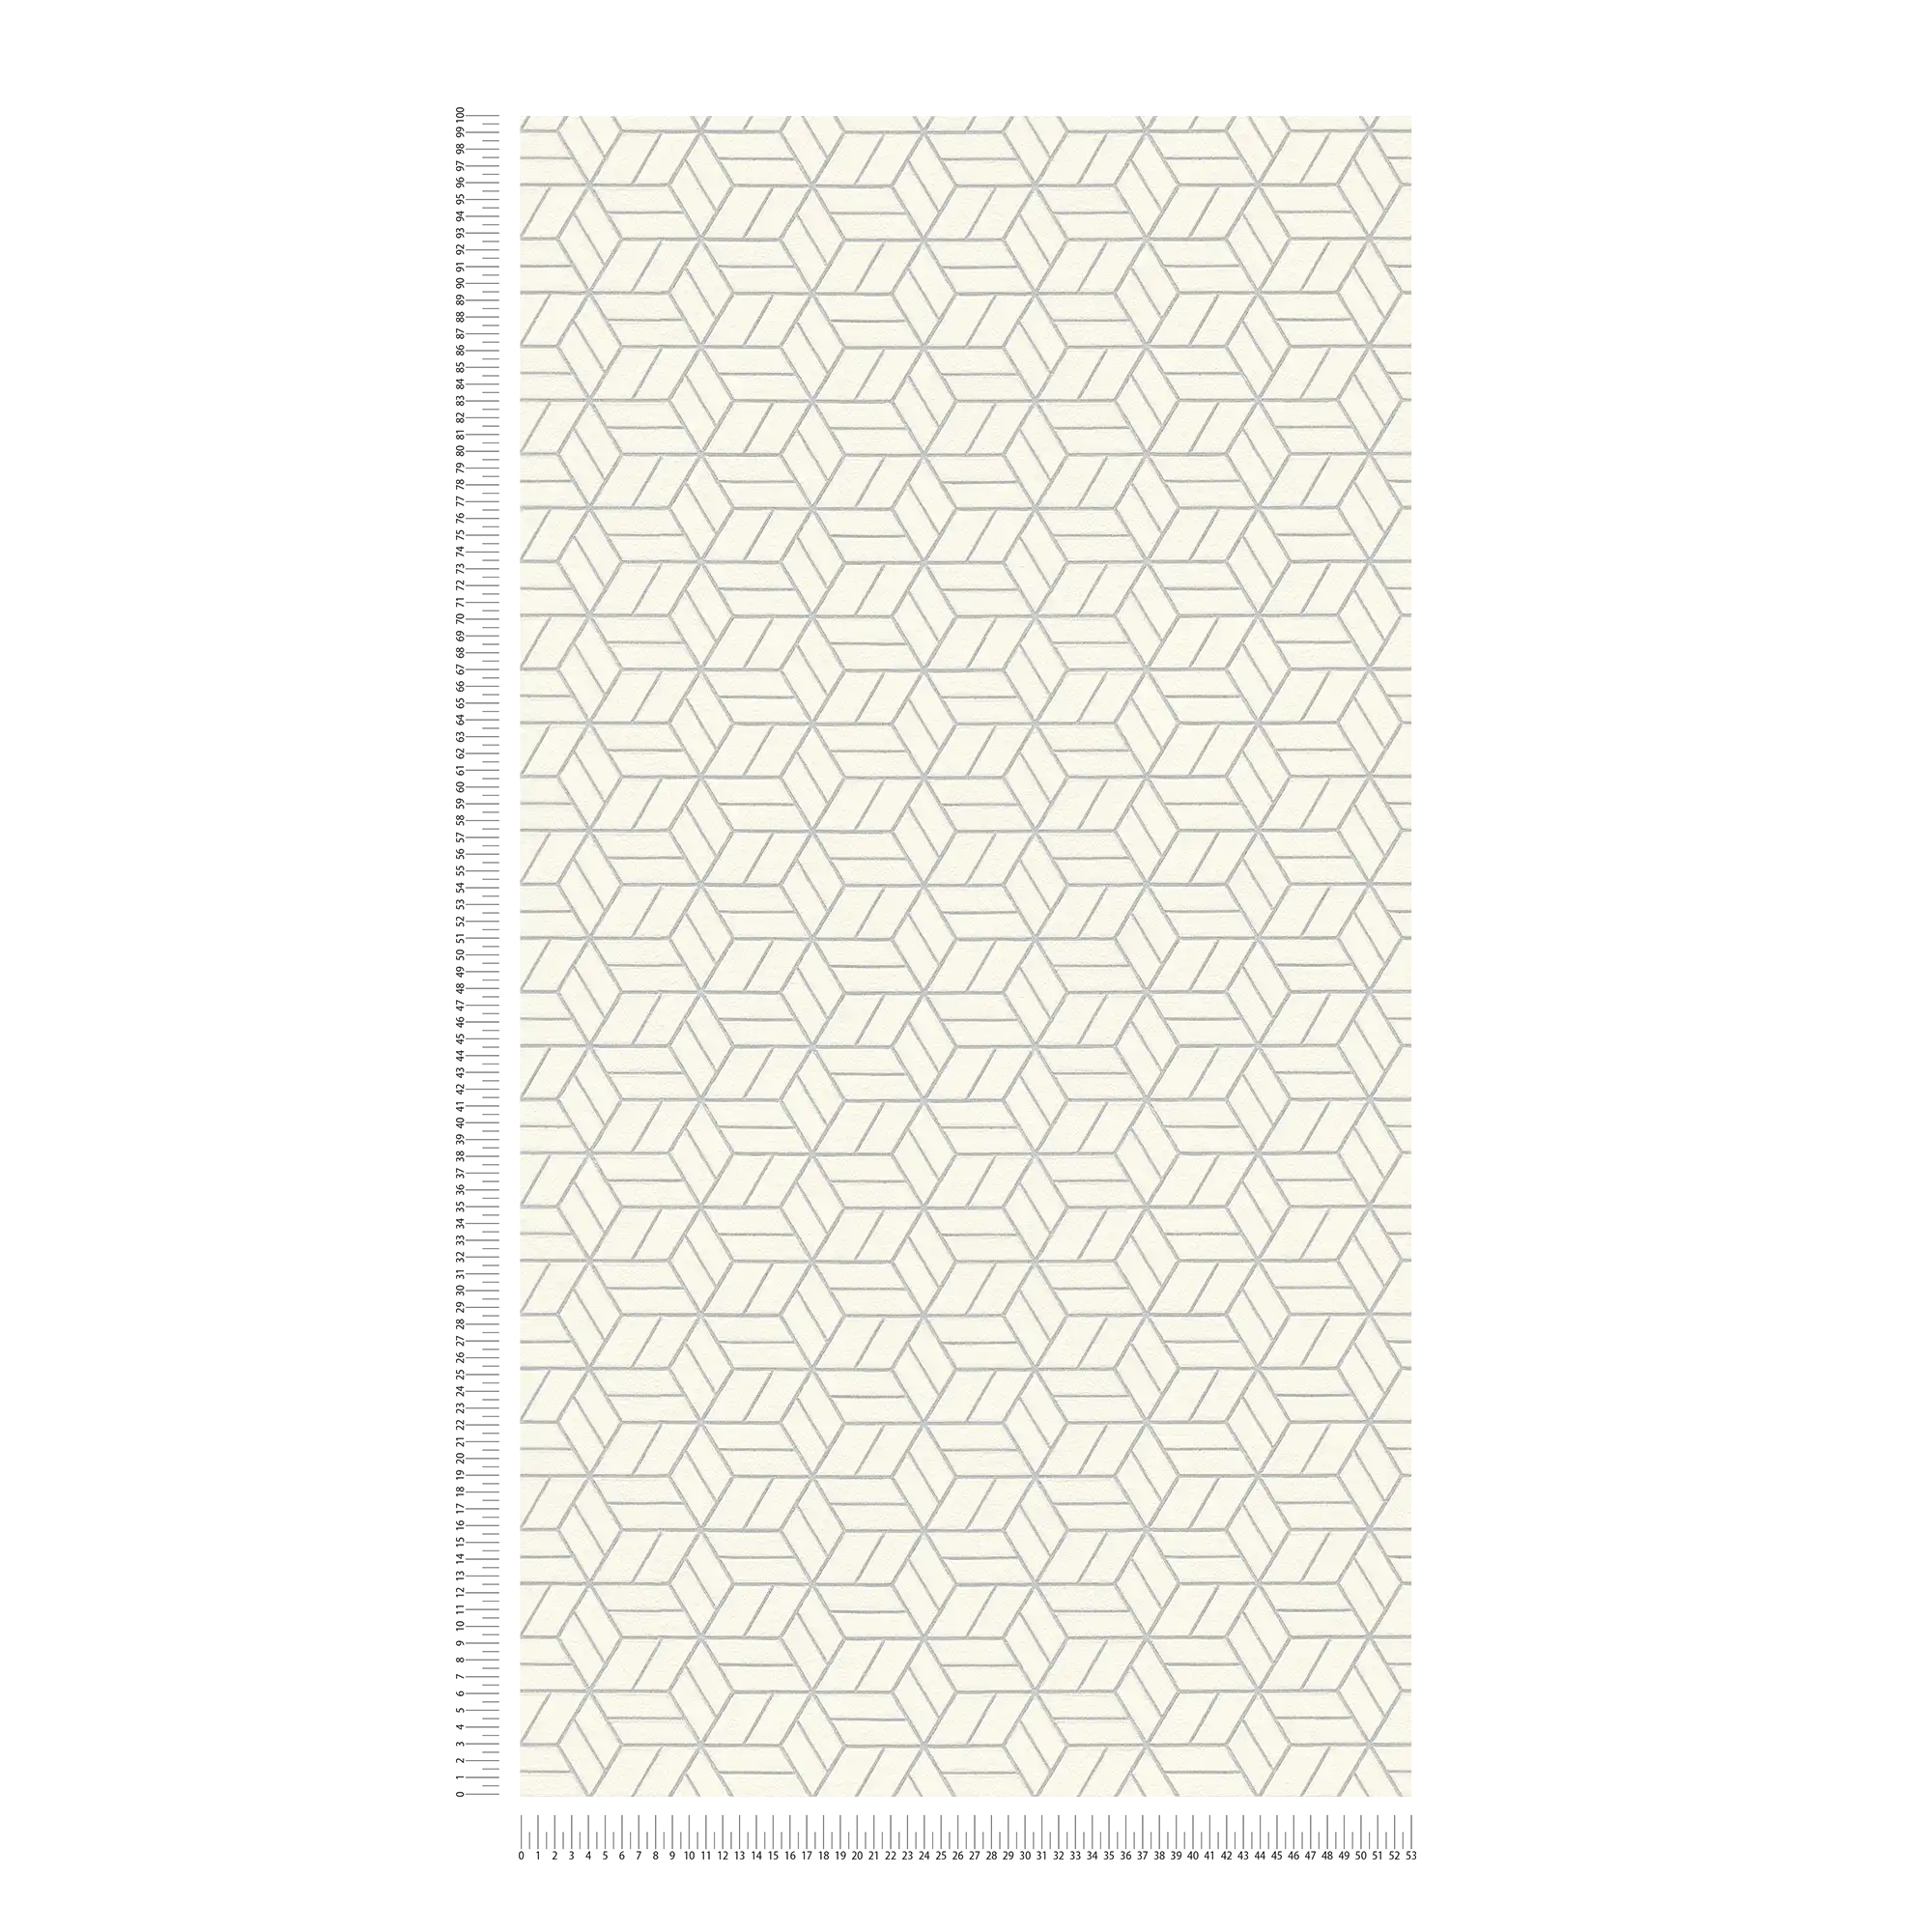             Papier peint motif géométrique & effet scintillant - argent, gris, blanc
        